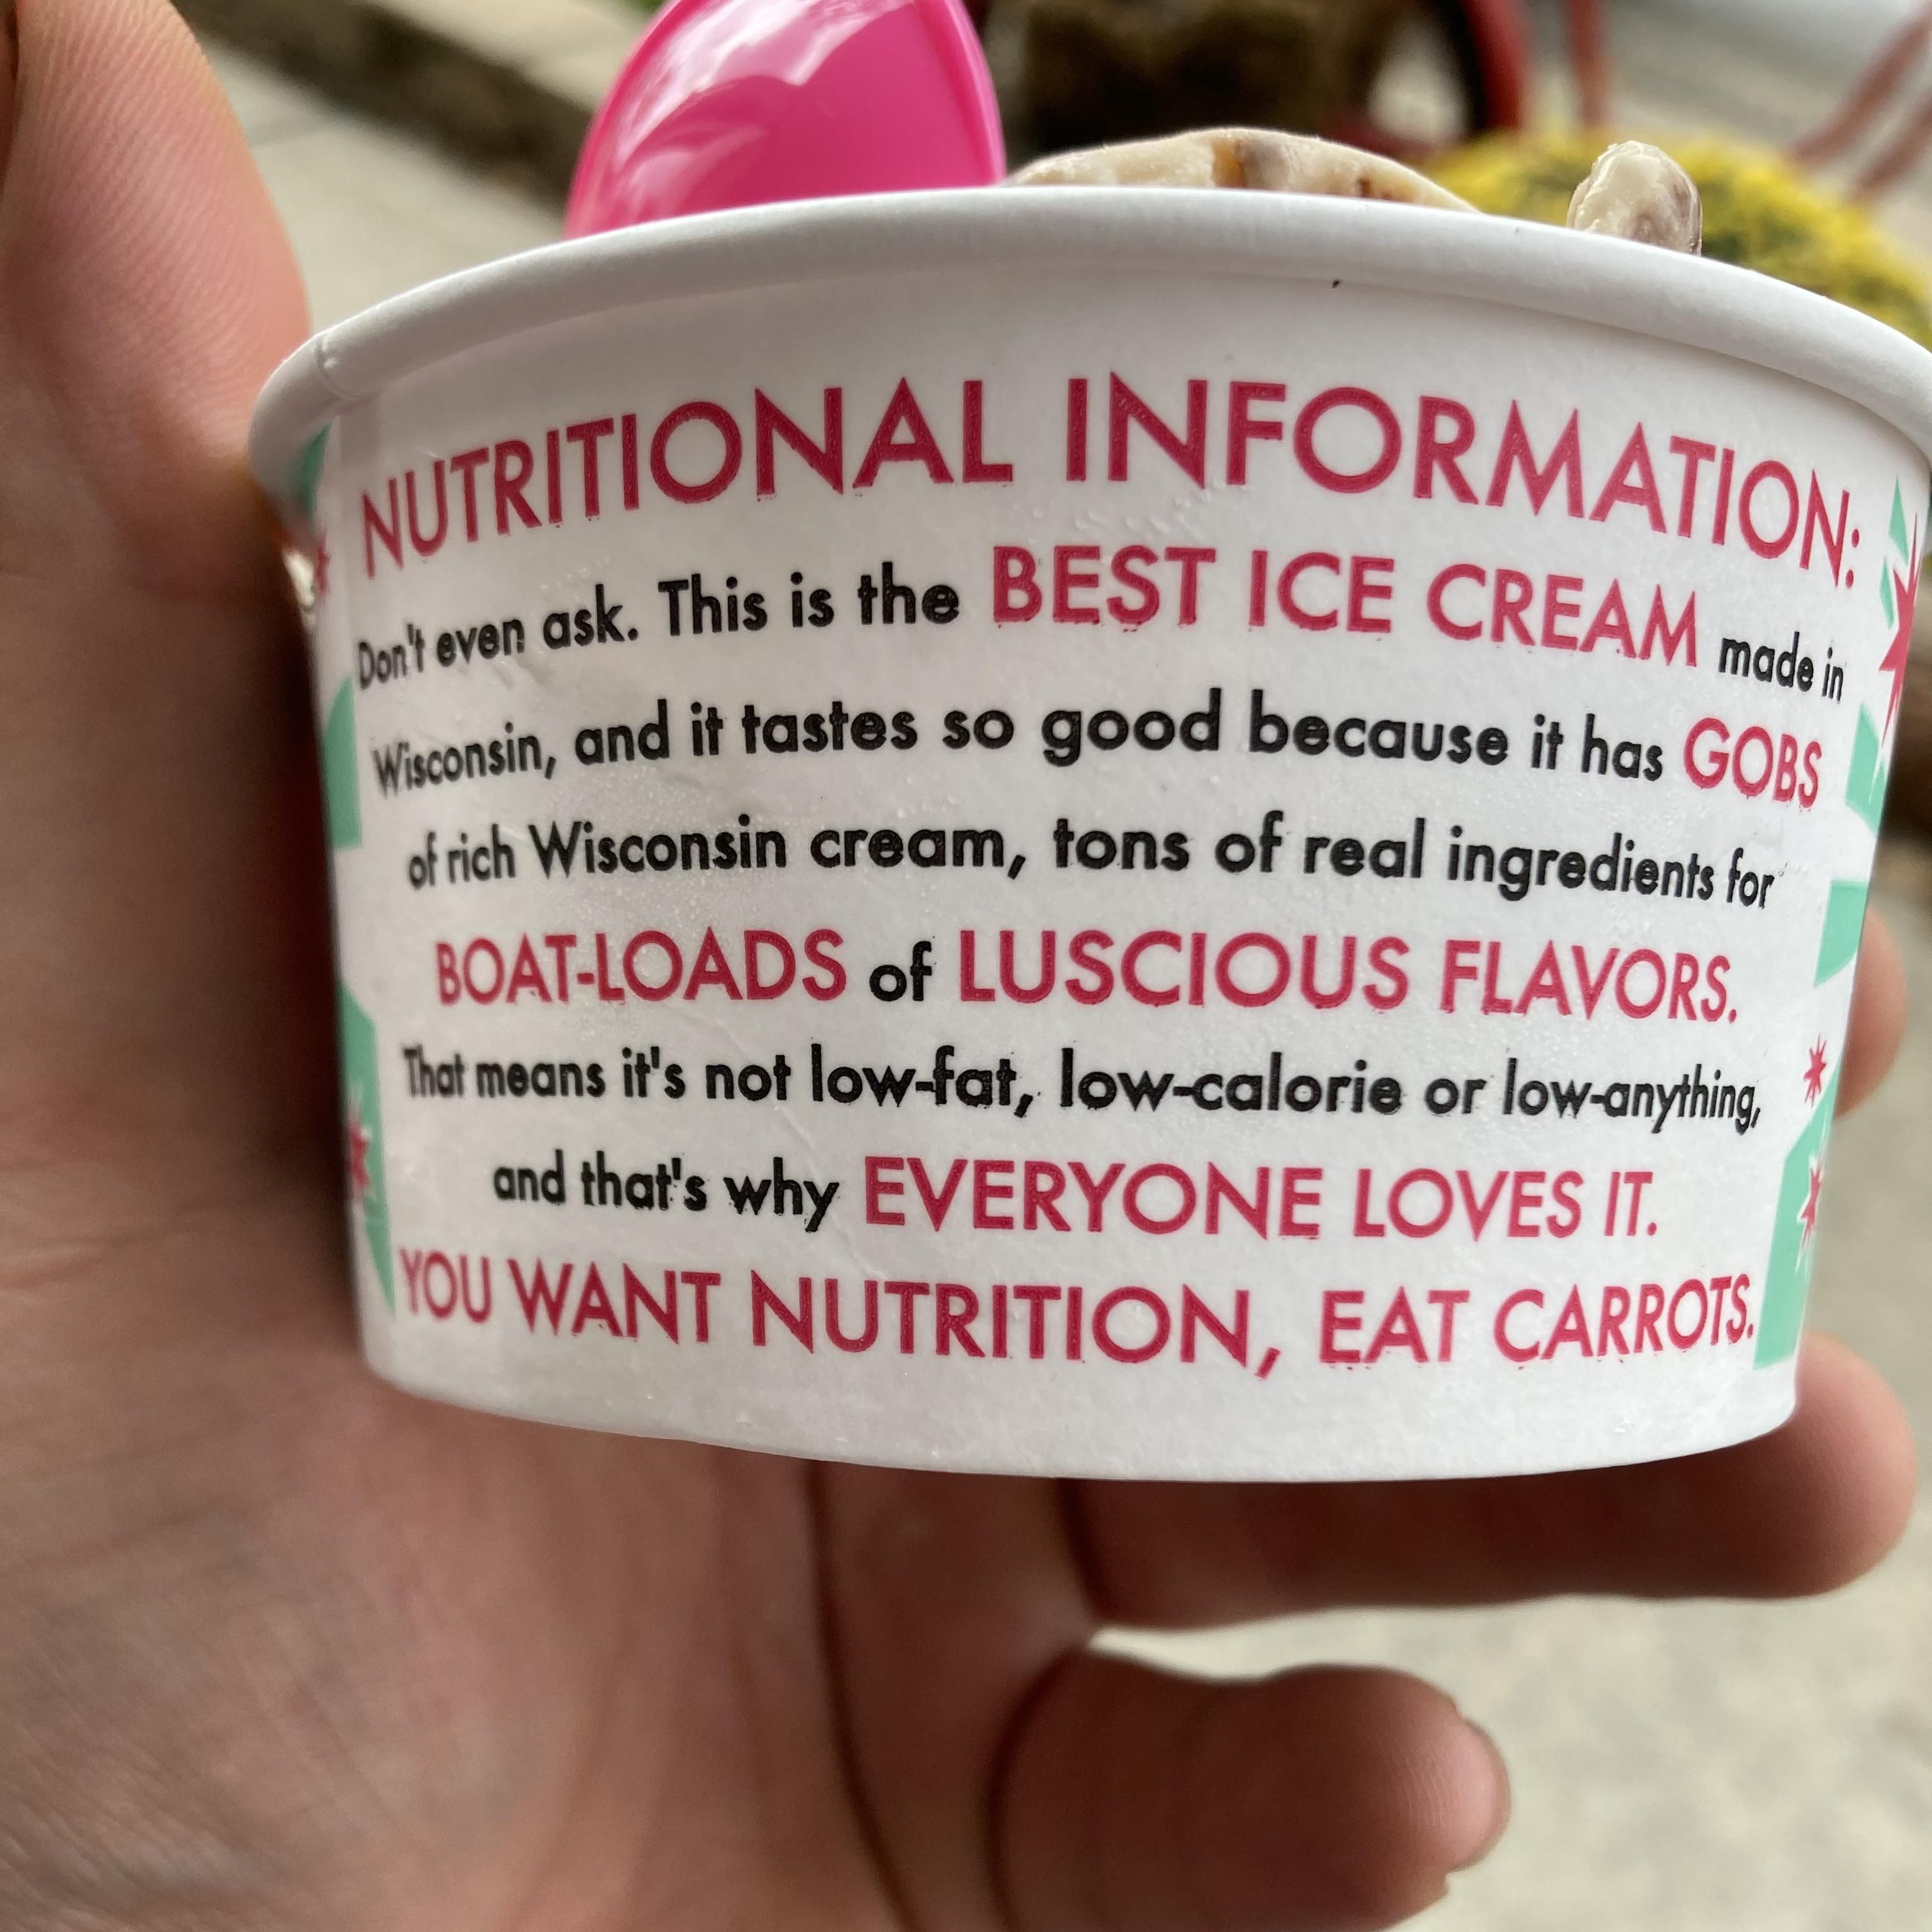 Nutritional information for Chocolate Shoppe ice cream. I appreciate their honesty.